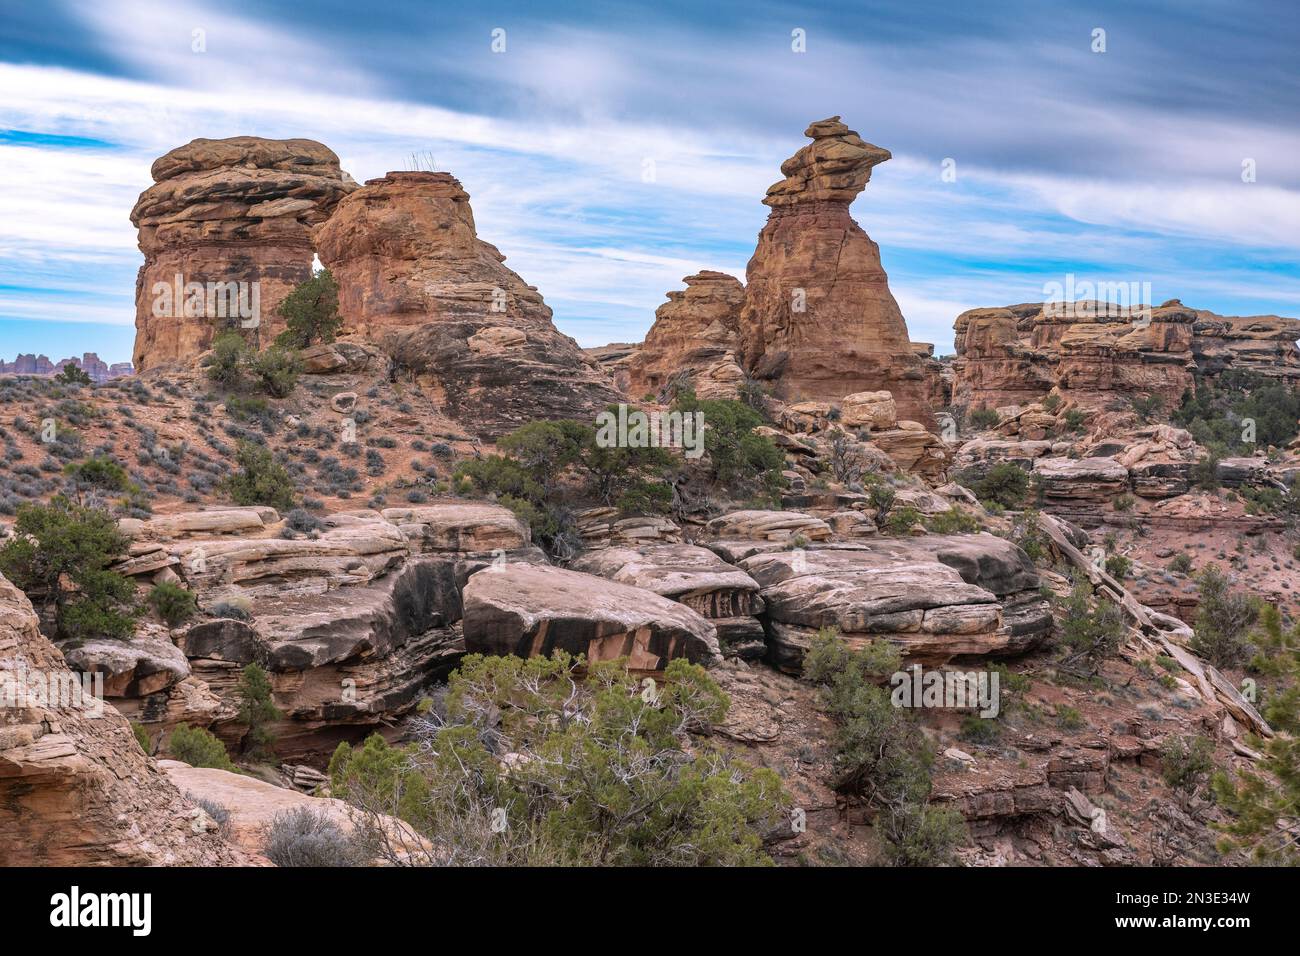 Roches empilées et grande géologie à Big Spring Canyon dans le parc national de Canyonlands ; Blanding, Utah, États-Unis d'Amérique Banque D'Images